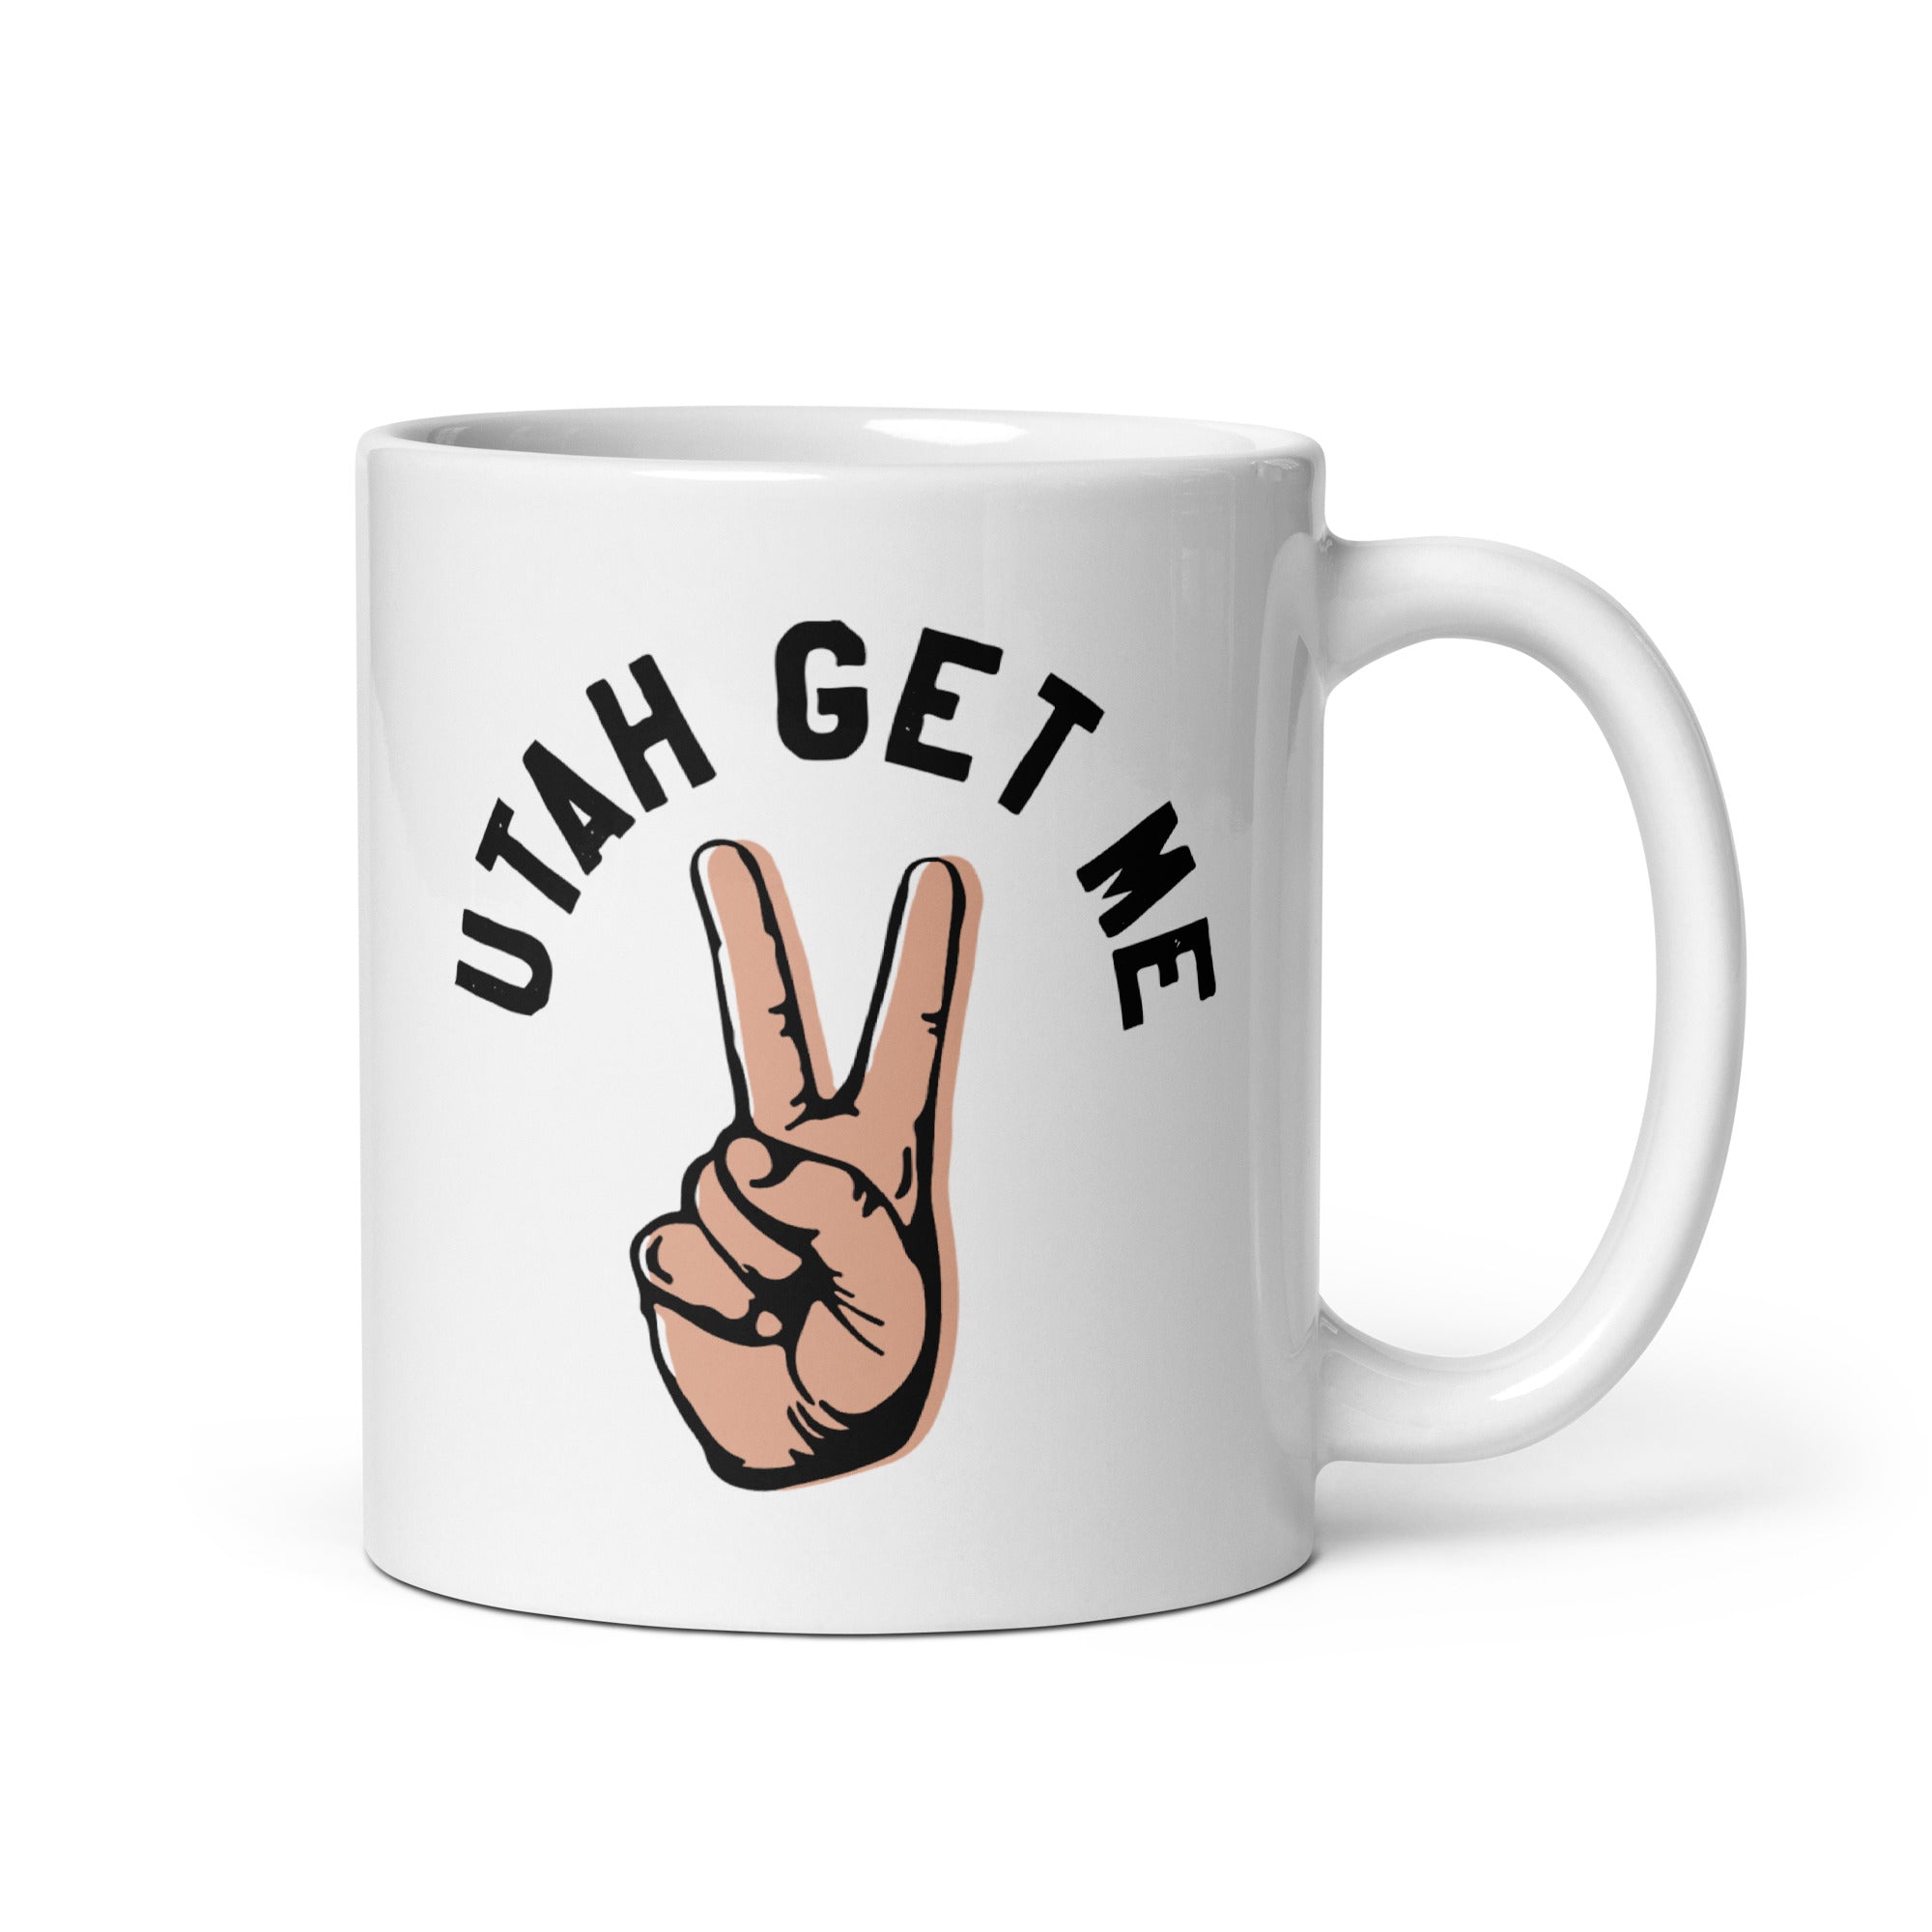 Utah Get Me Two - 11oz Coffee Mug